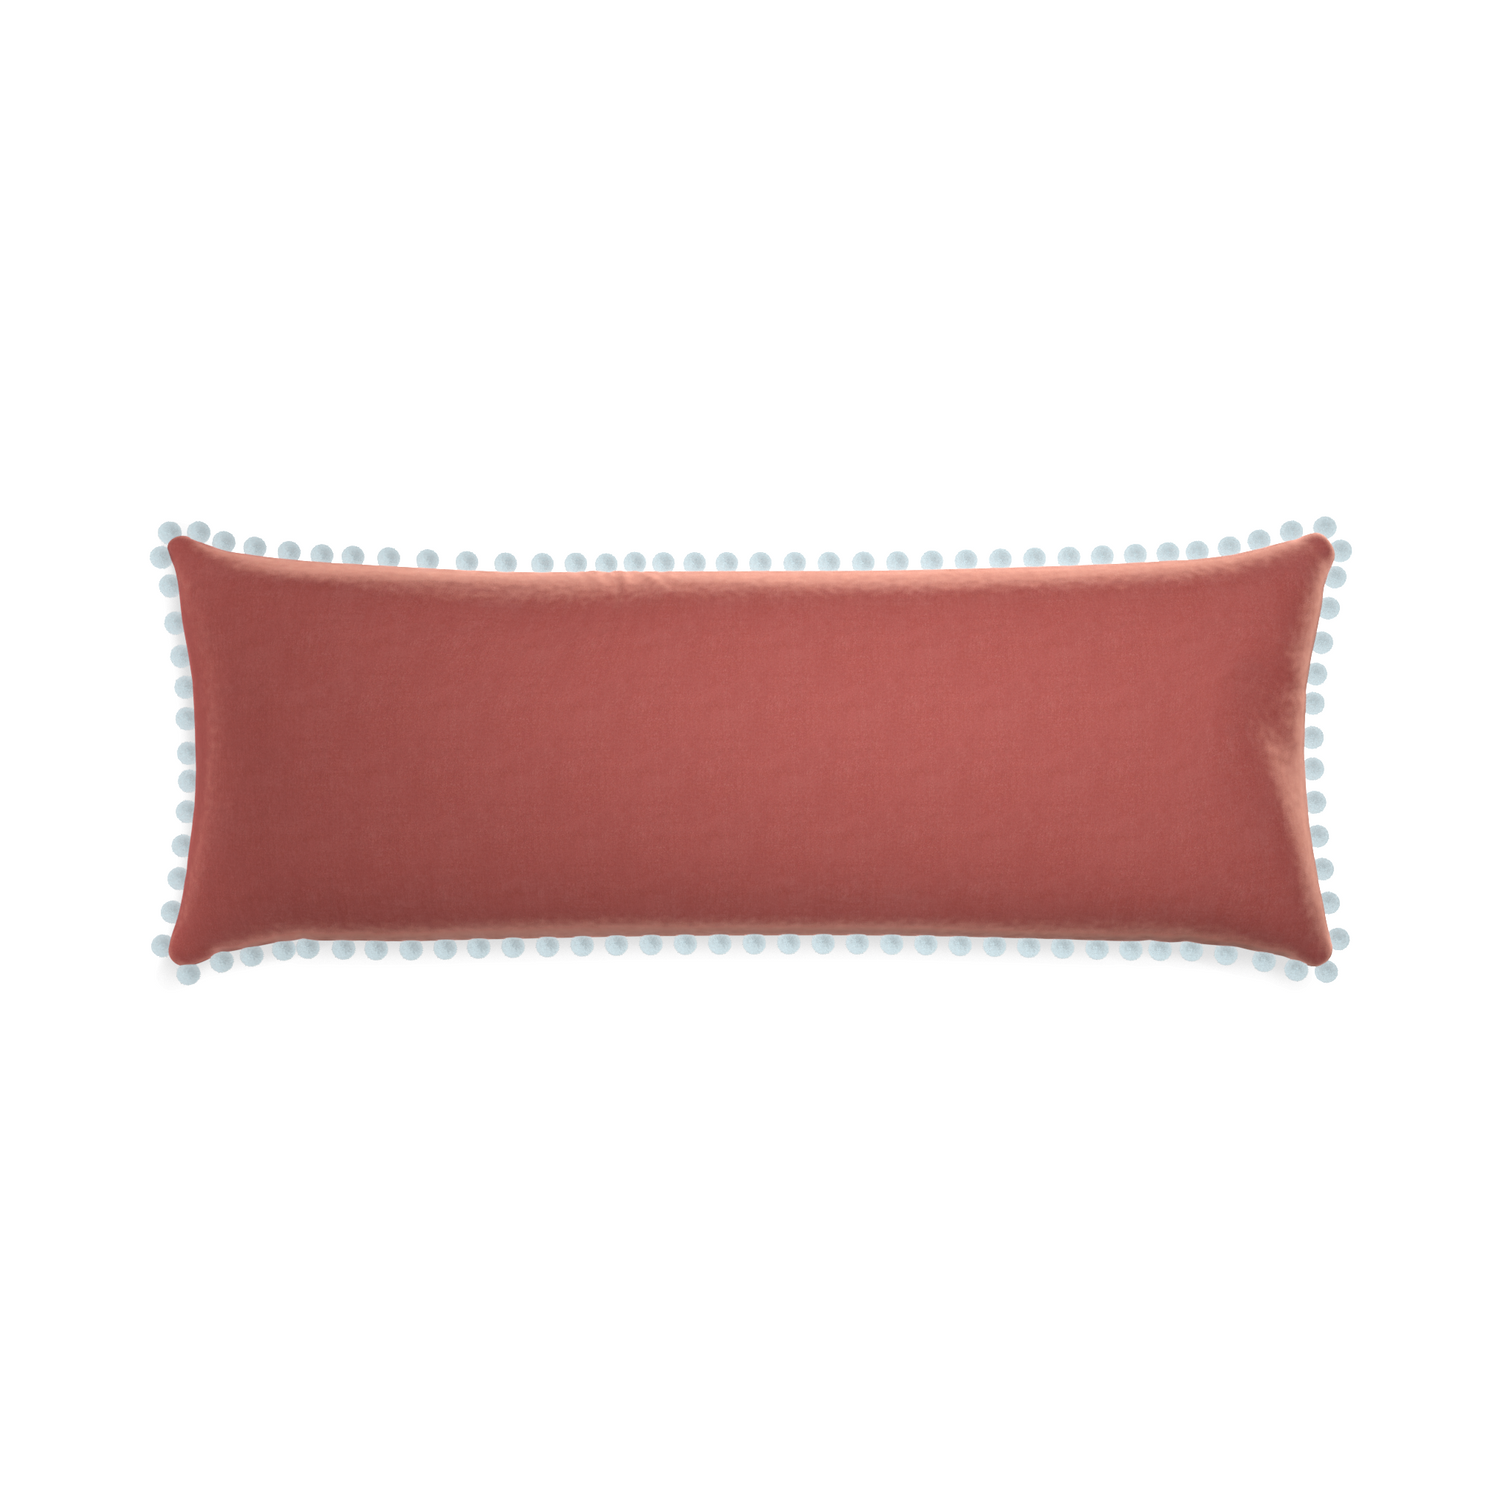 rectangle coral velvet pillow with light blue pom poms